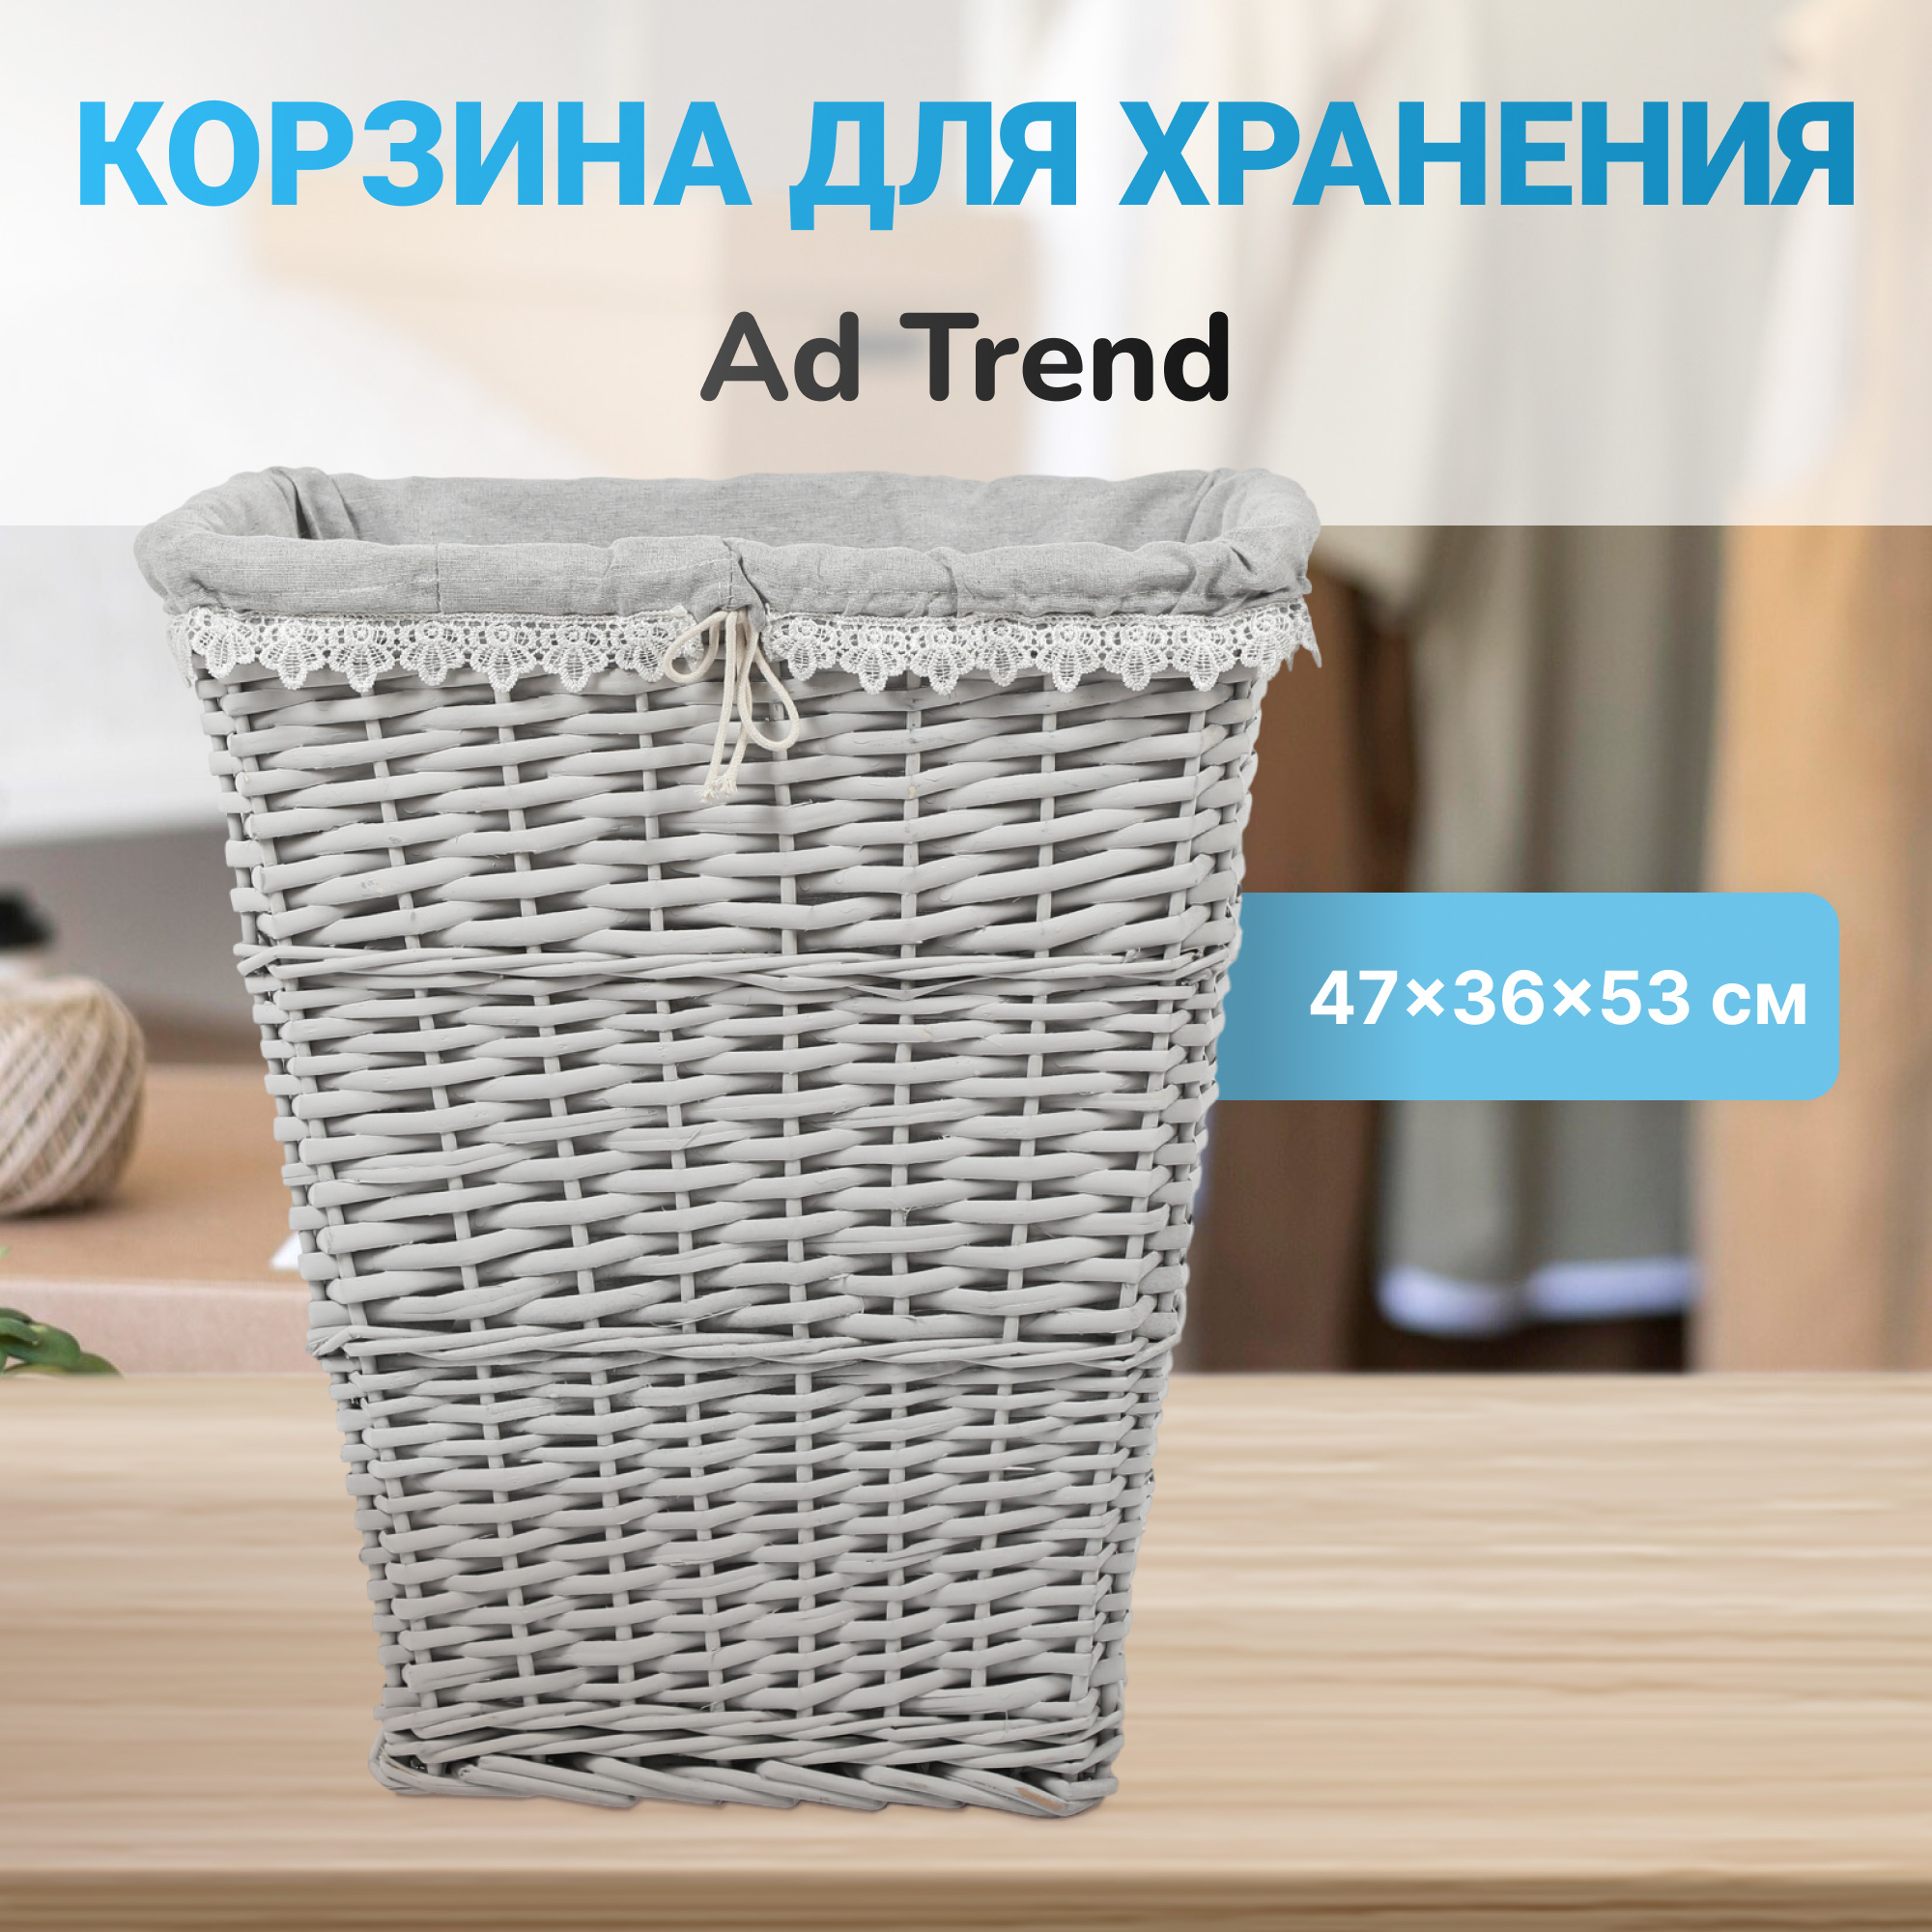 фото Корзина ad trend бельевая с ажурной тканью, 47x36x53 см в ассортименте